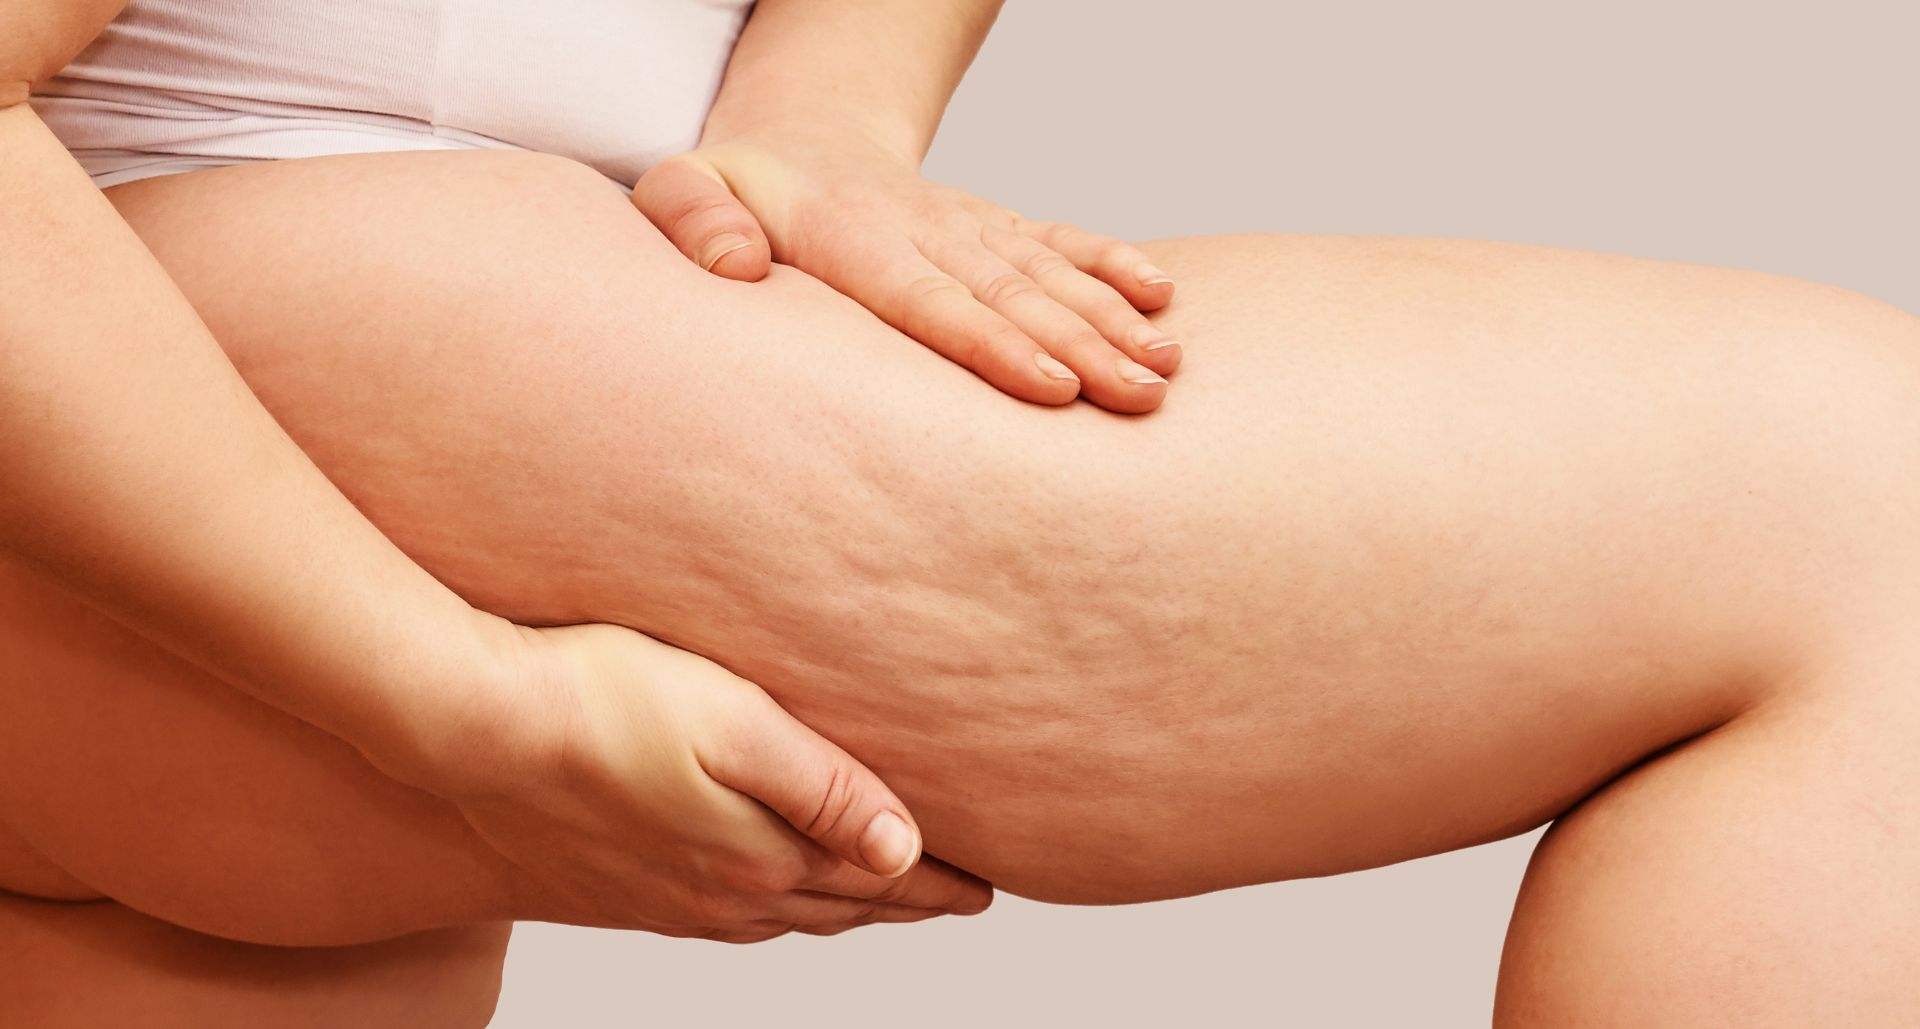 Cellulite Treatment - Causes, Risk Factors, Treatment, Alternative